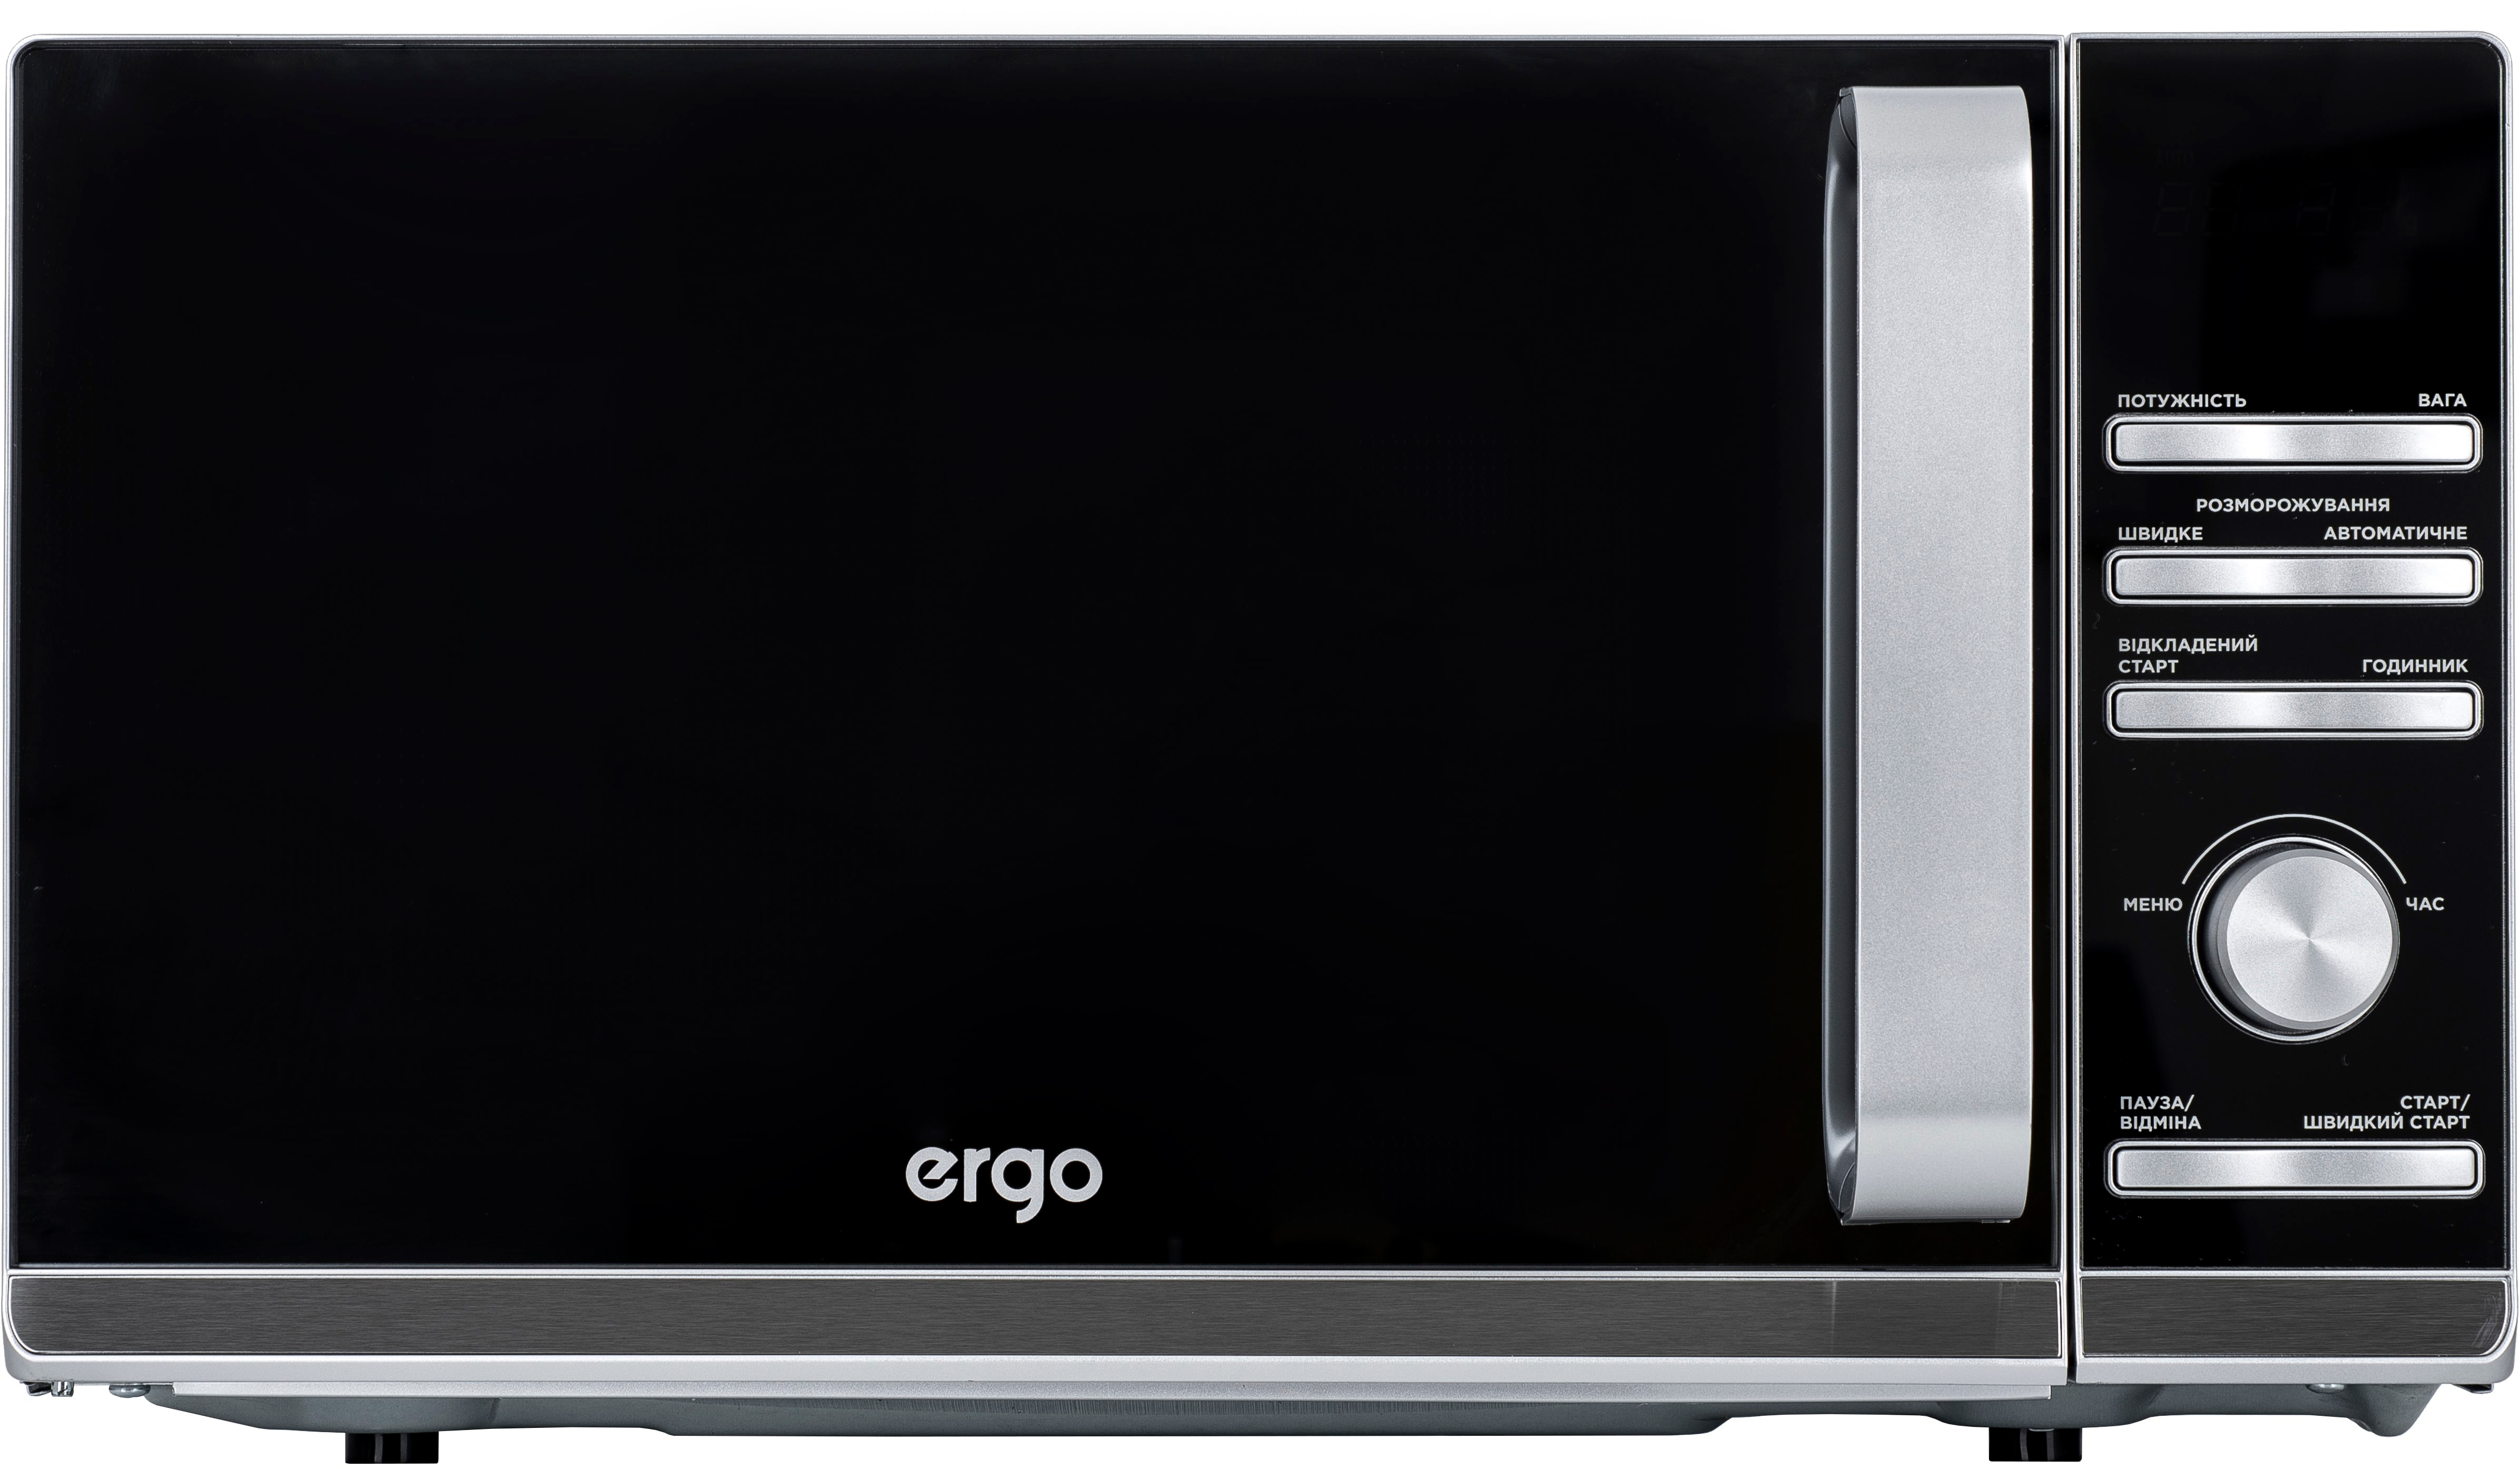 Купить микроволновая печь Ergo EM-2055 в Киеве